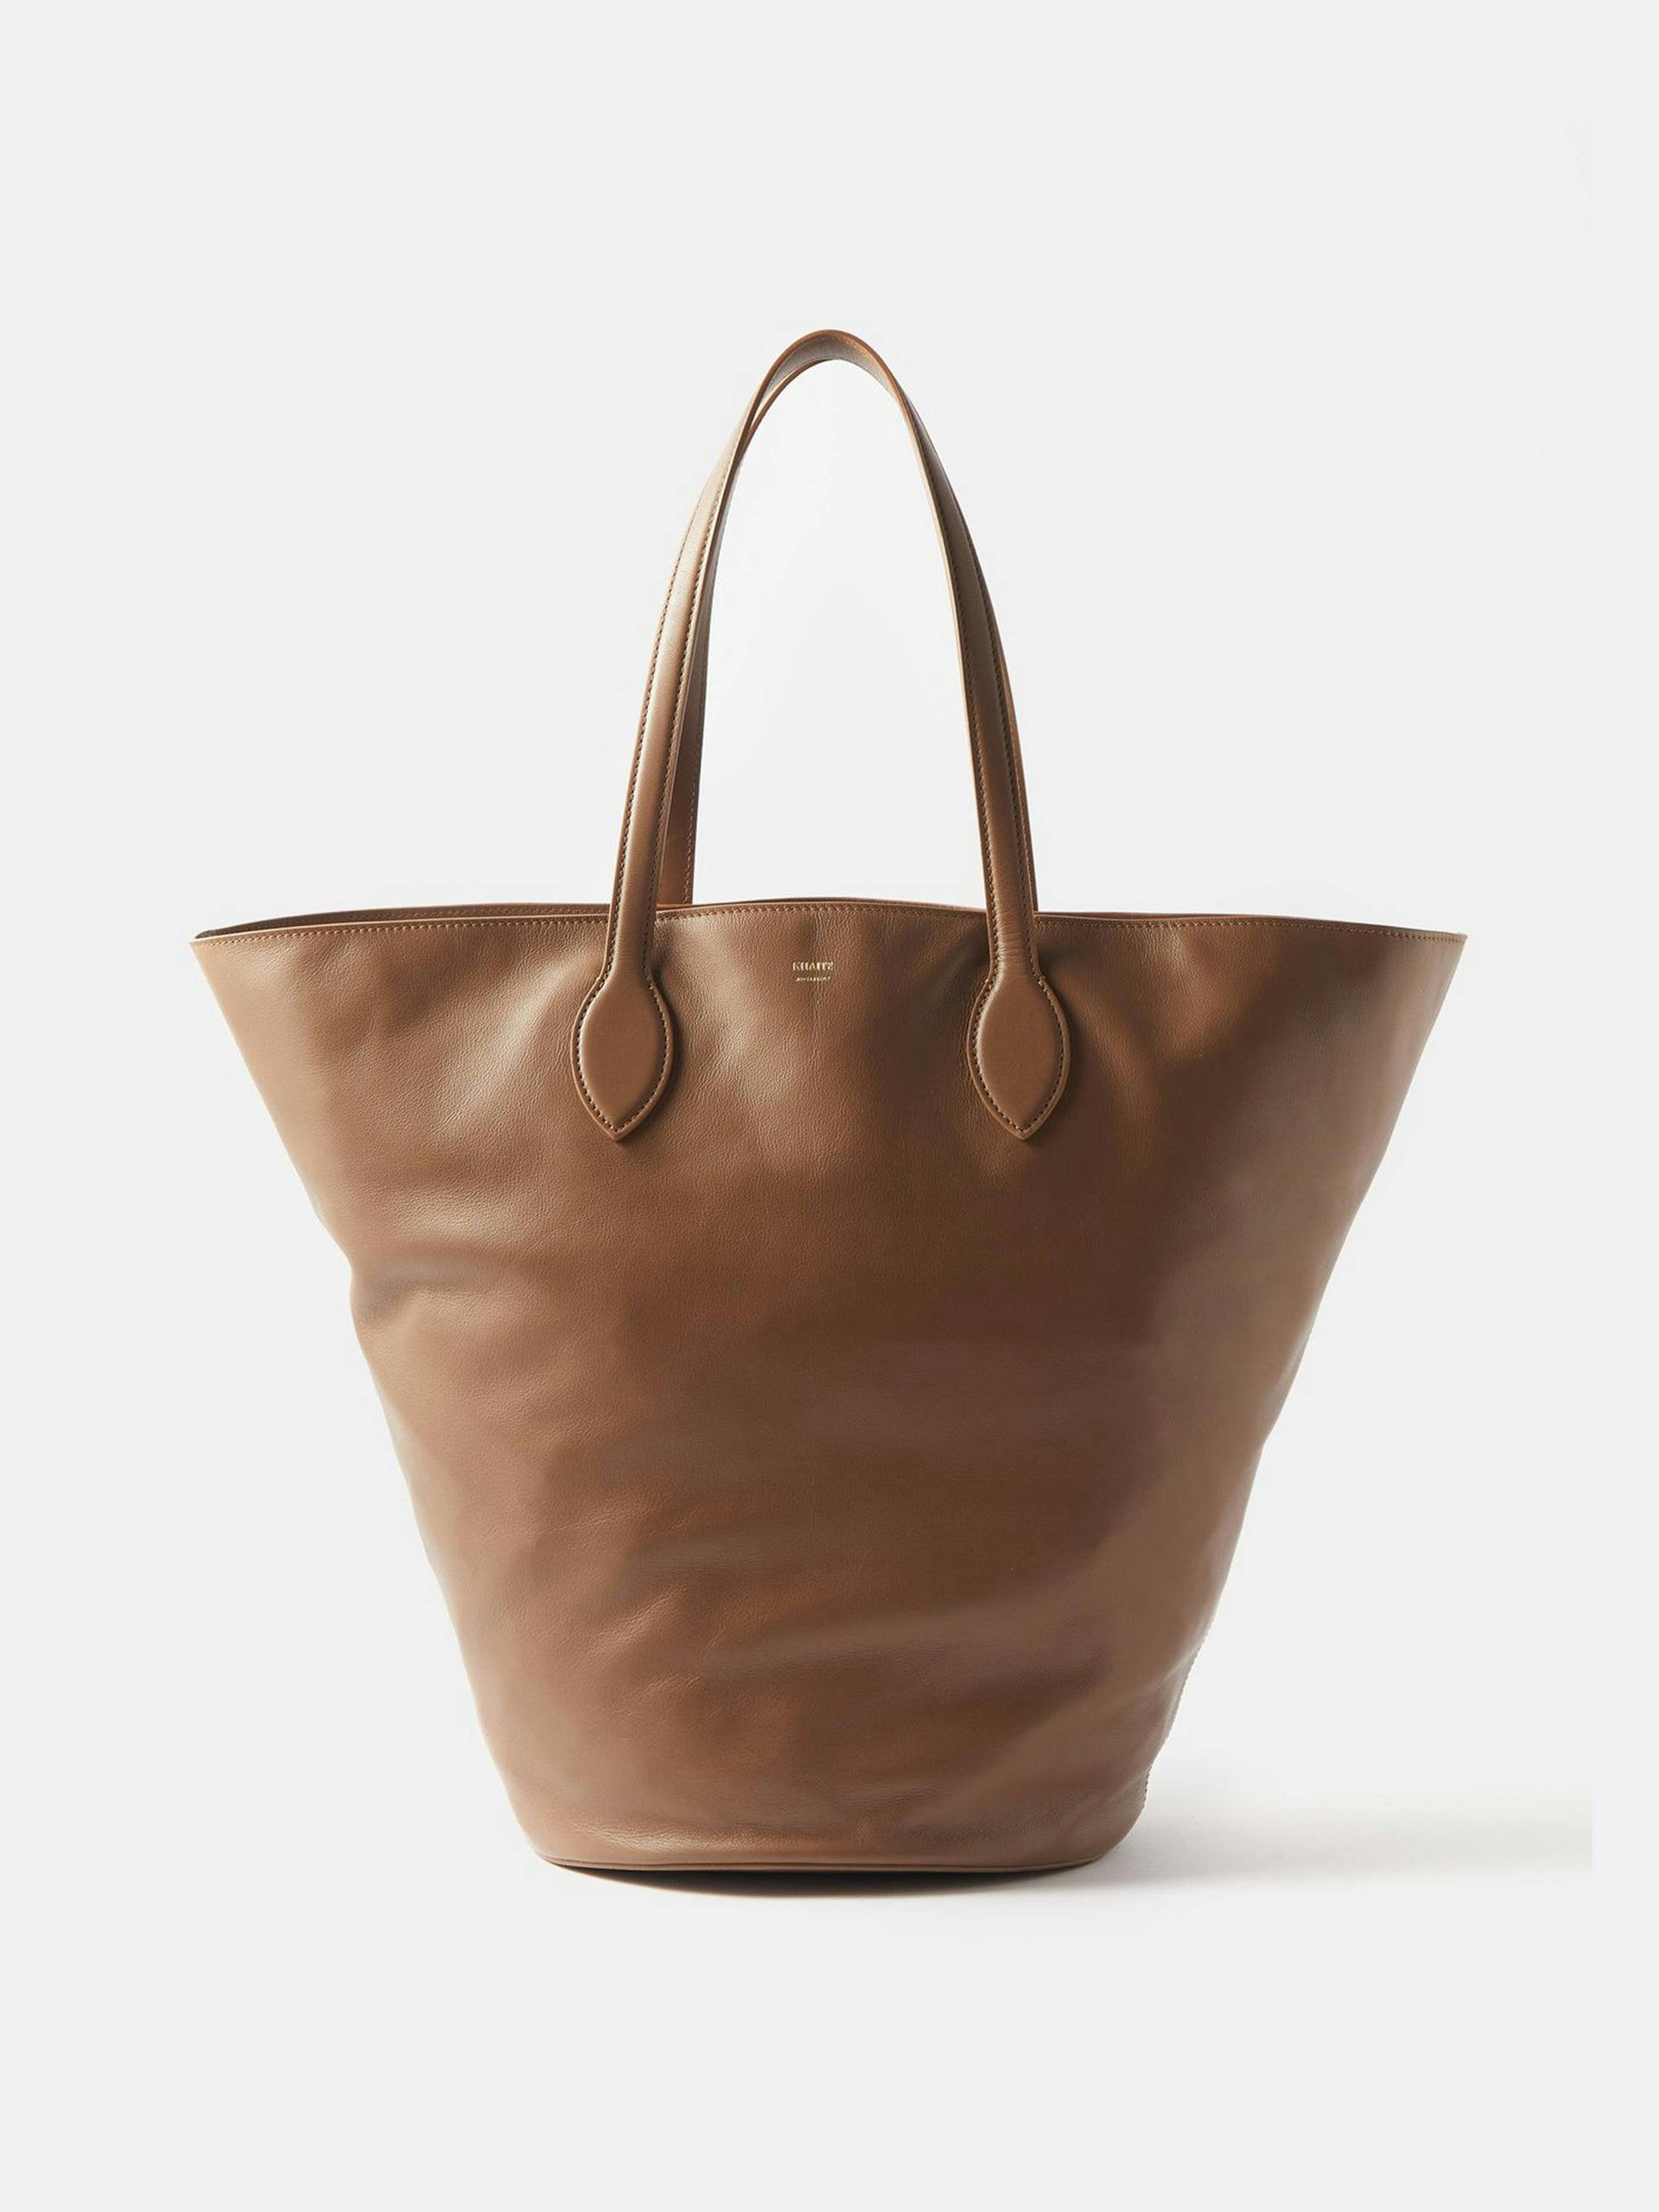 Osa leather tote bag